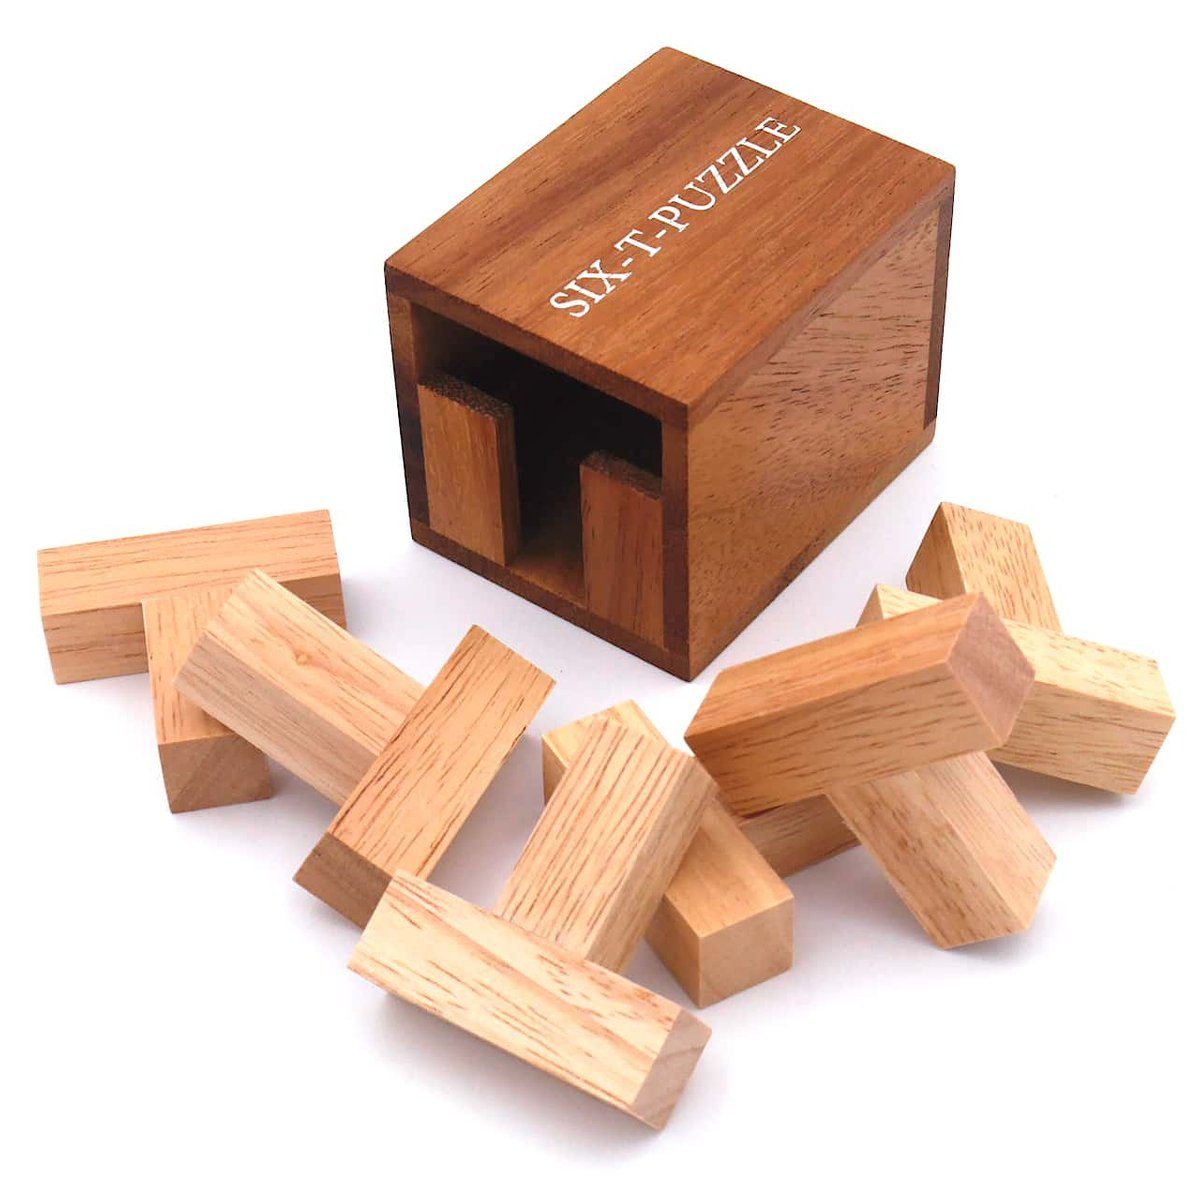 Holz, bei uns tolles Knobelspiel Erwachsene ROMBOL Kinder exklusiv SIX-T- für Puzzle und aus Spiel, Denkspiele nur Packproblem -